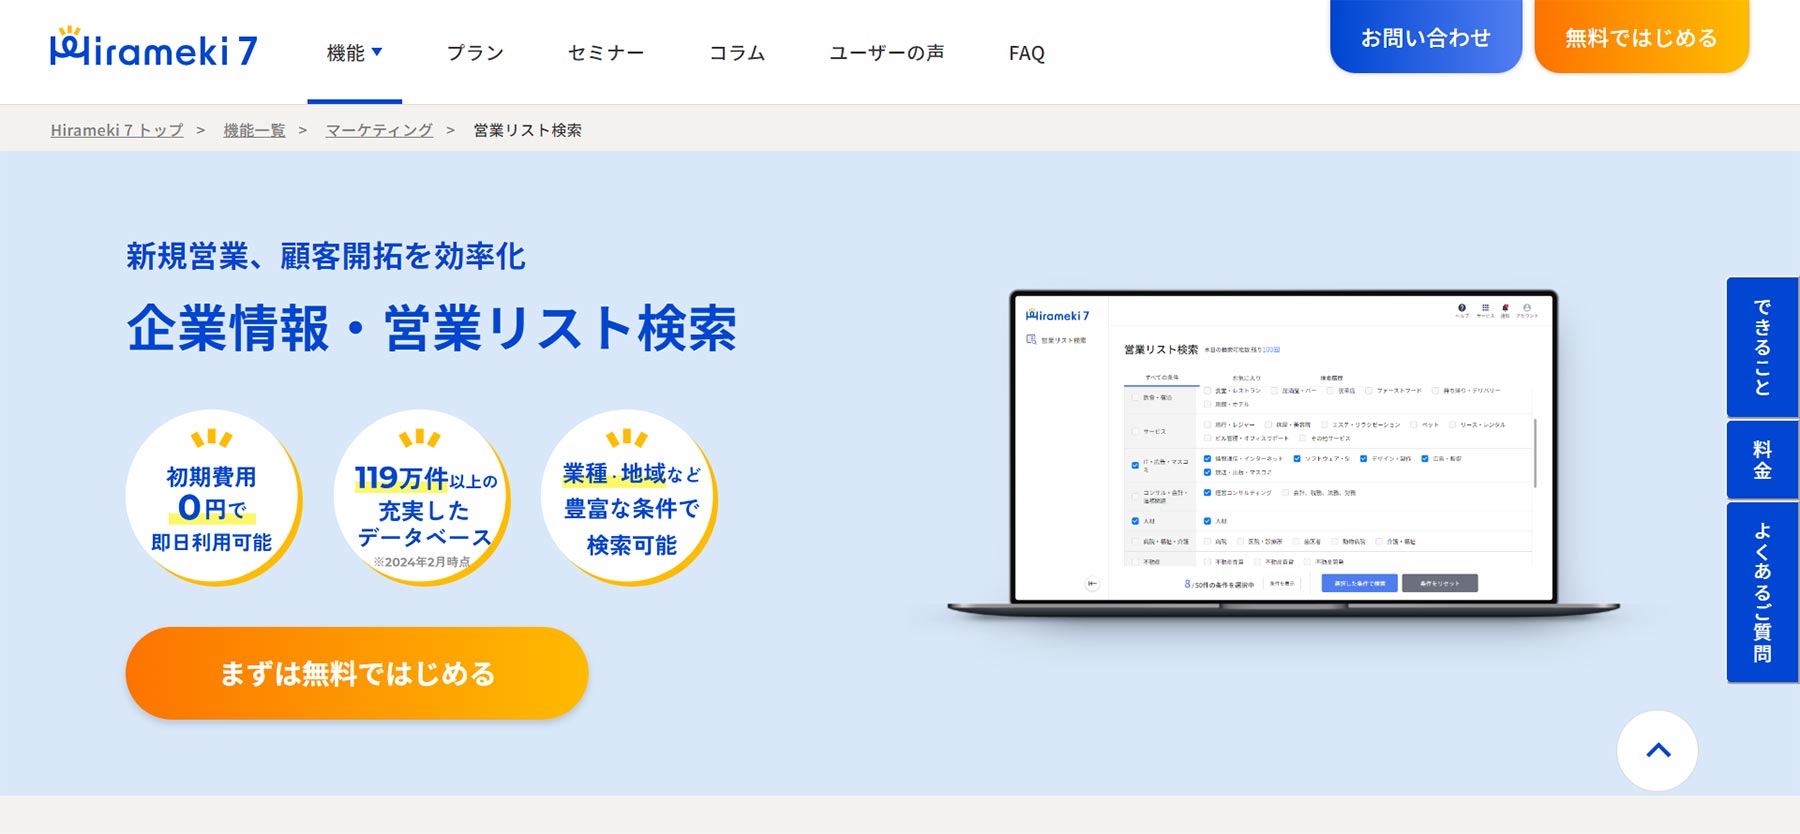 Hirameki 7_公式Webサイト